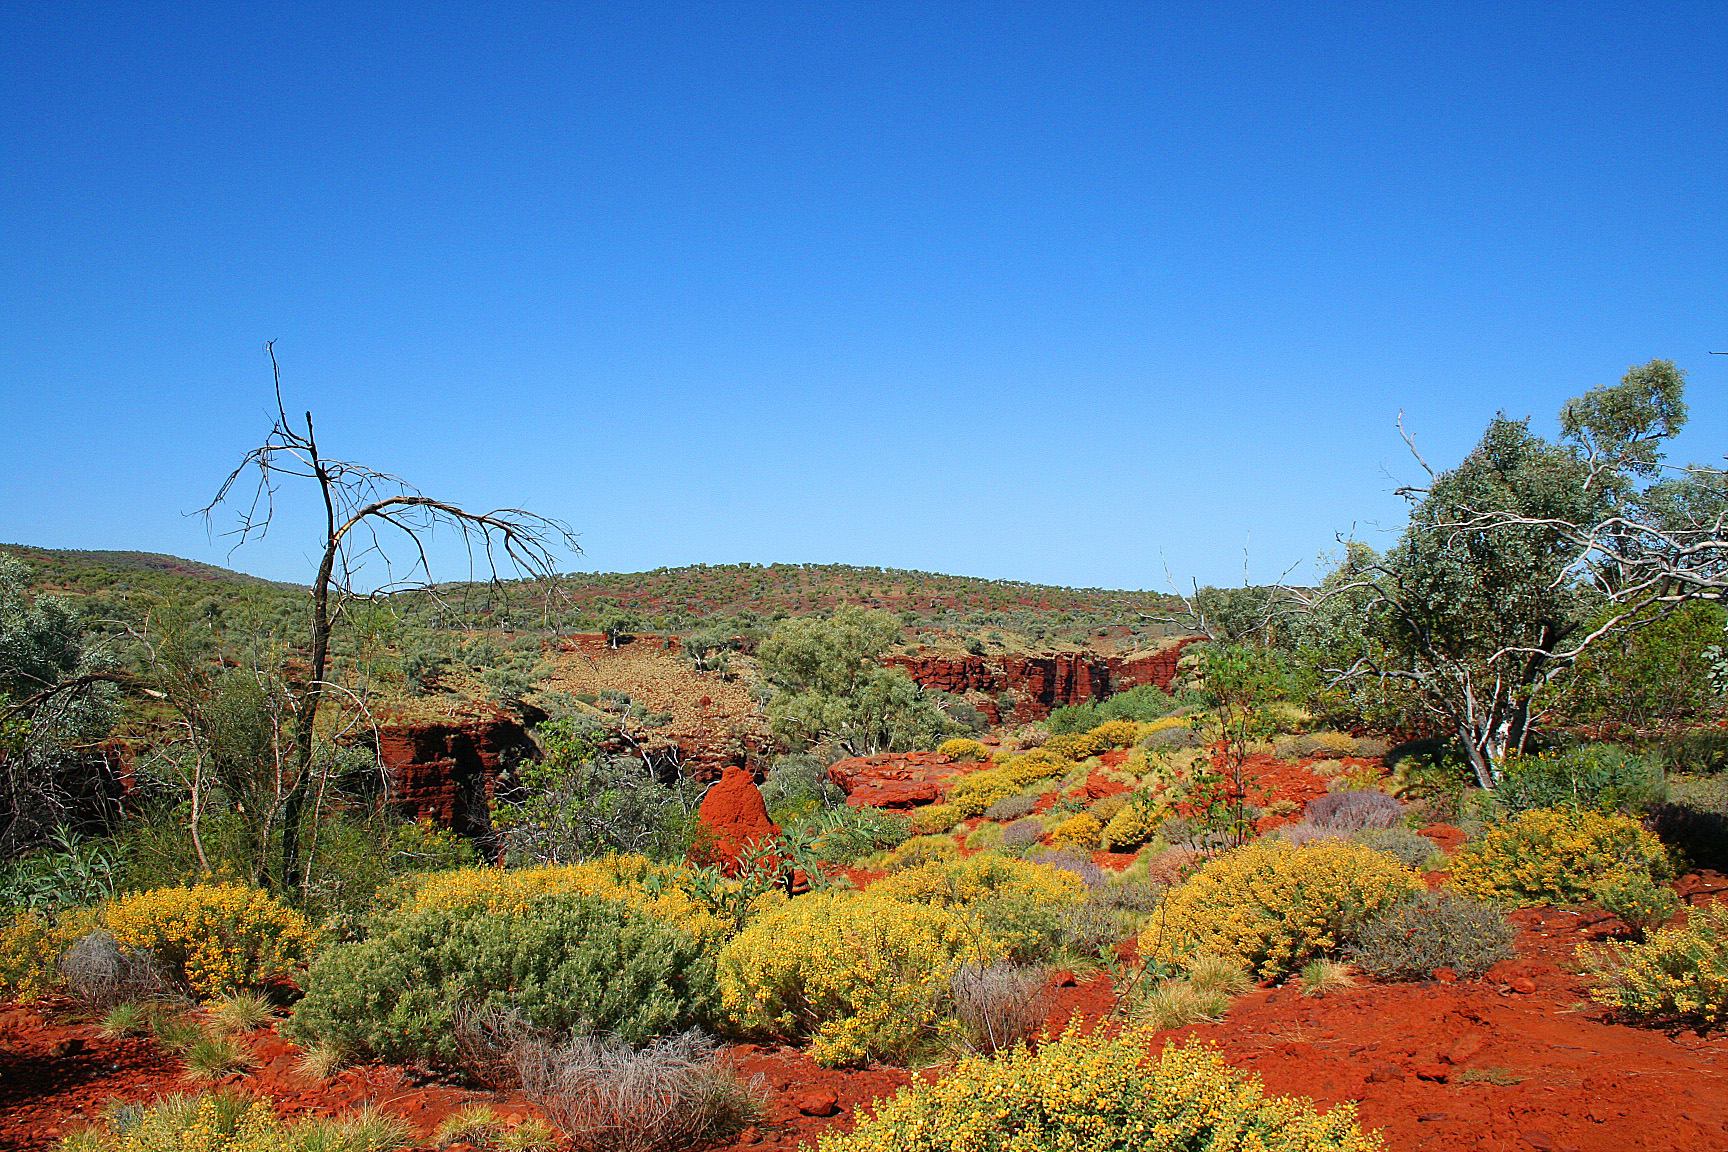 The Pilbara Image 1